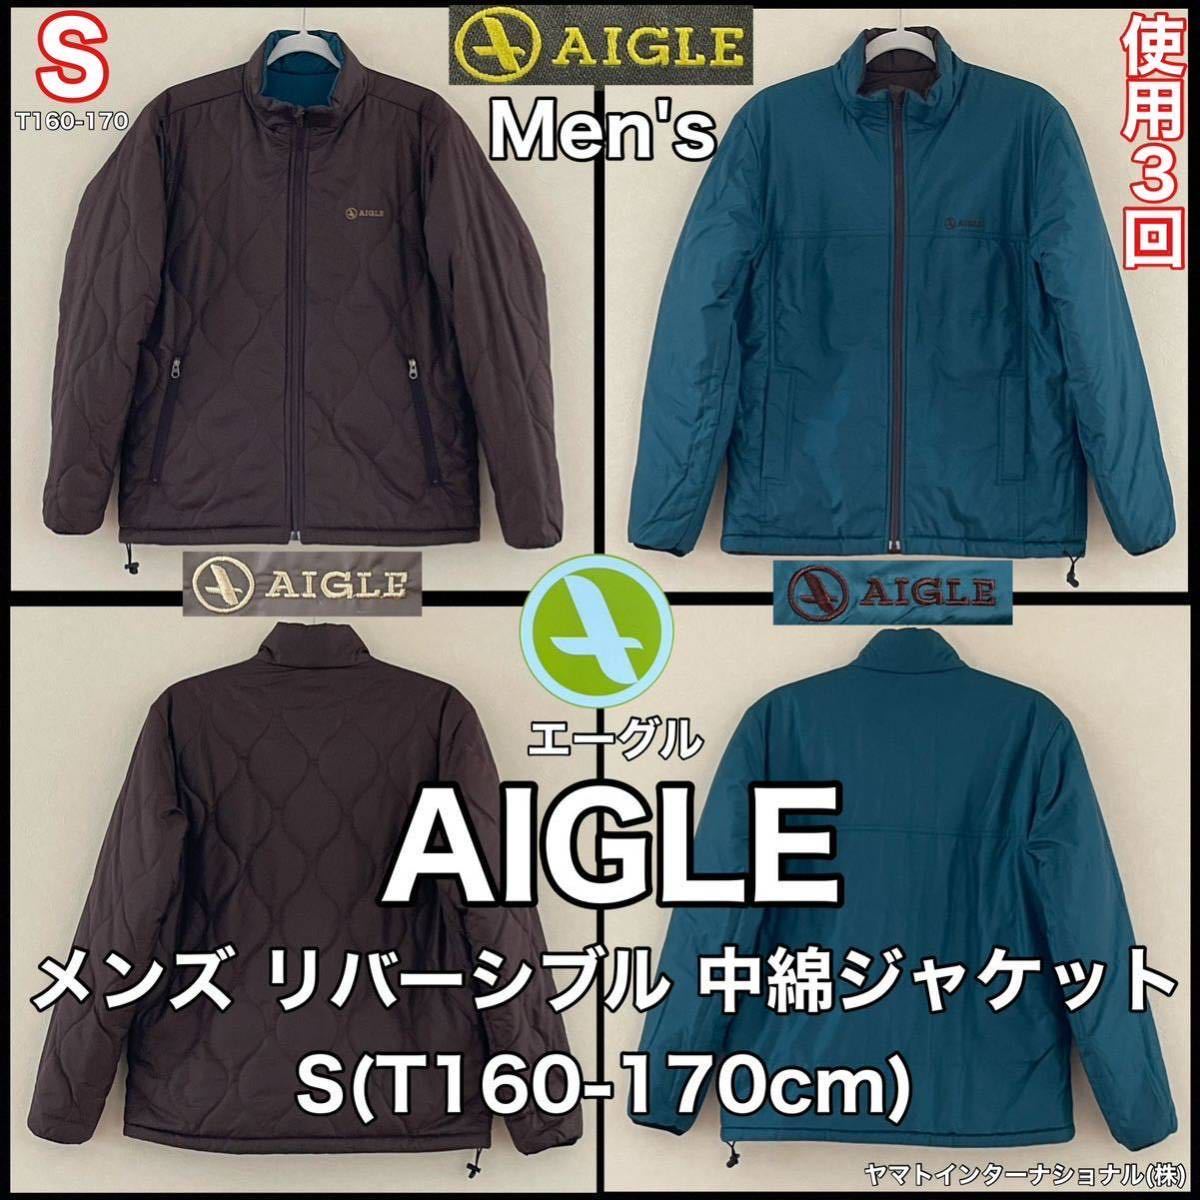 超美品 AIGLE(エーグル)メンズ リバーシブル 中綿 ジャケット S(T160-170cm)使用3回 グリーン ブラウン 長袖 防寒 アウトドア スポーツ